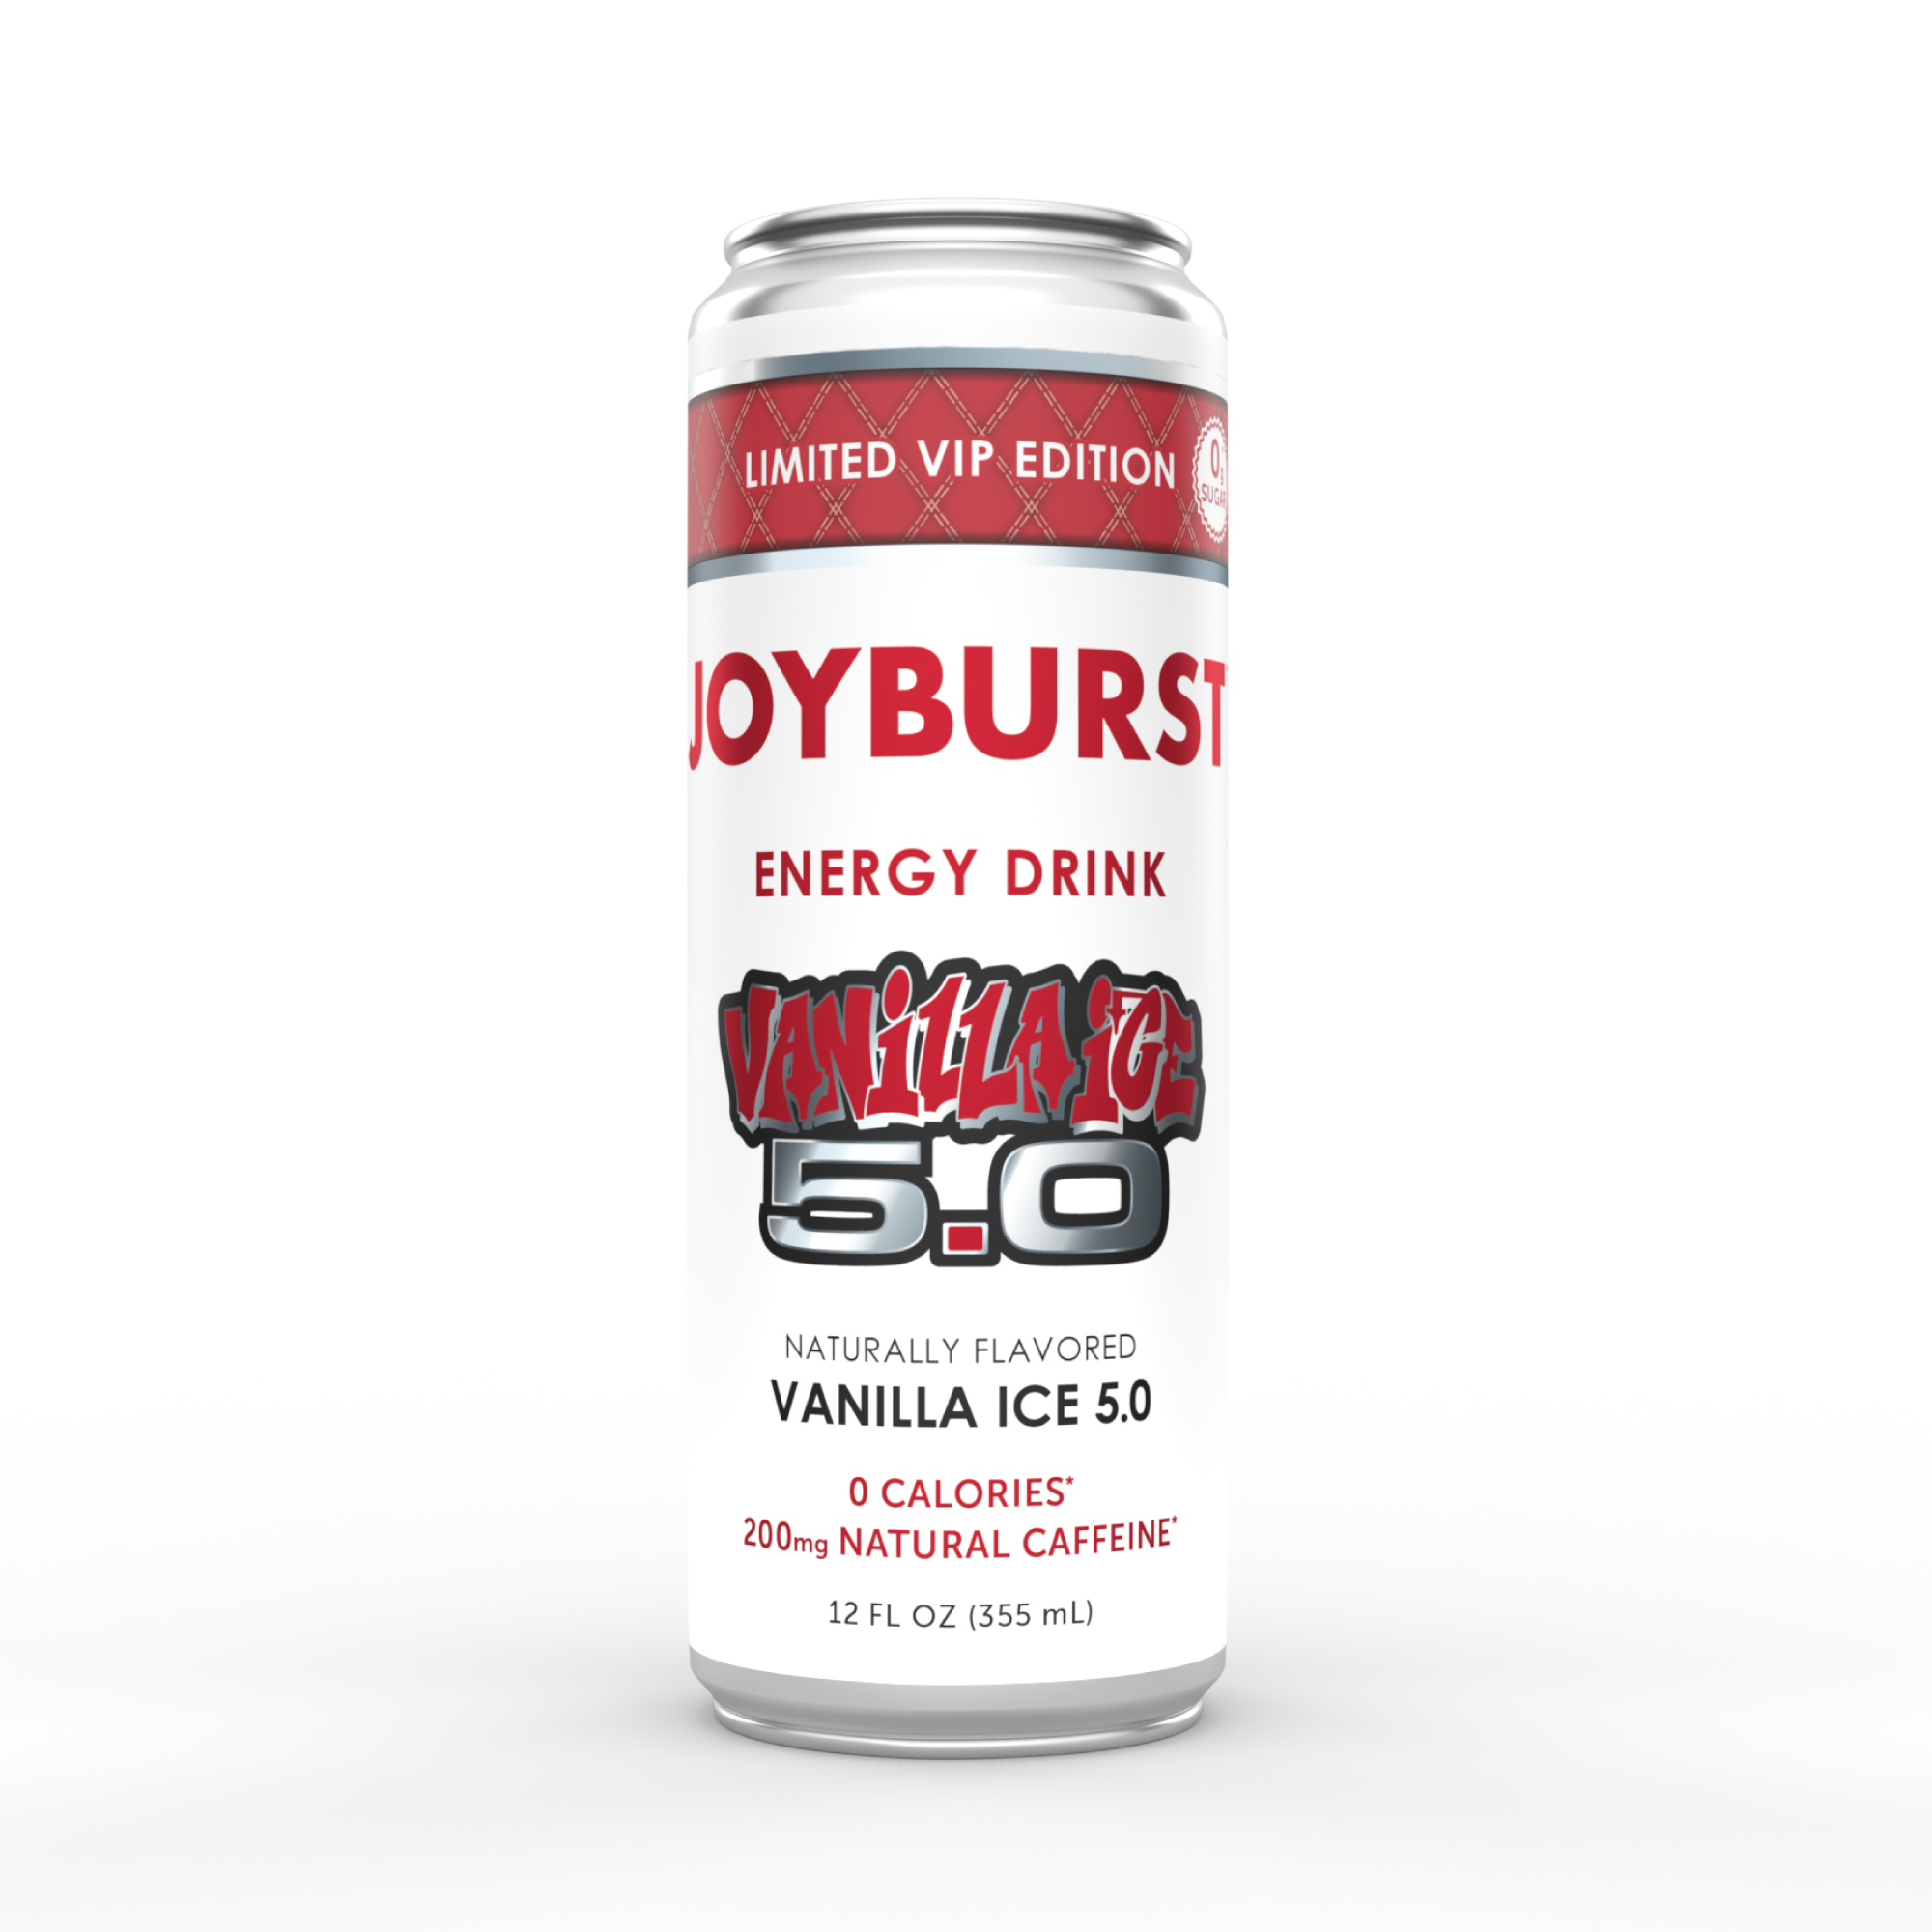 Limited Edition Joyburst Vanilla Ice 5.0